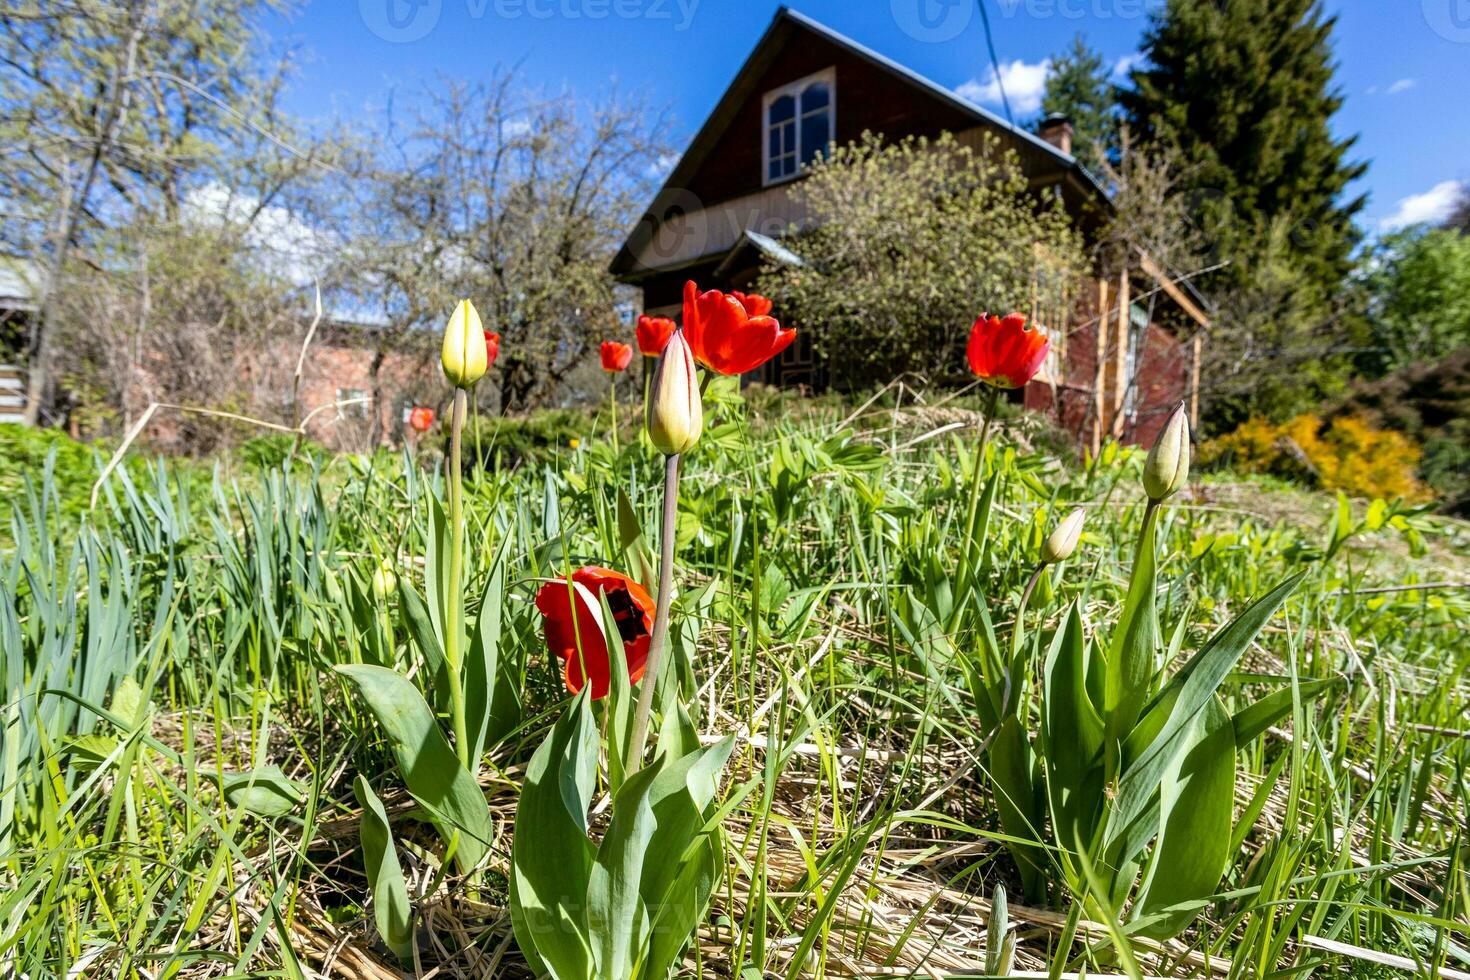 rot Tulpe Blumen in der Nähe von Sommer- Haus im Dorf foto